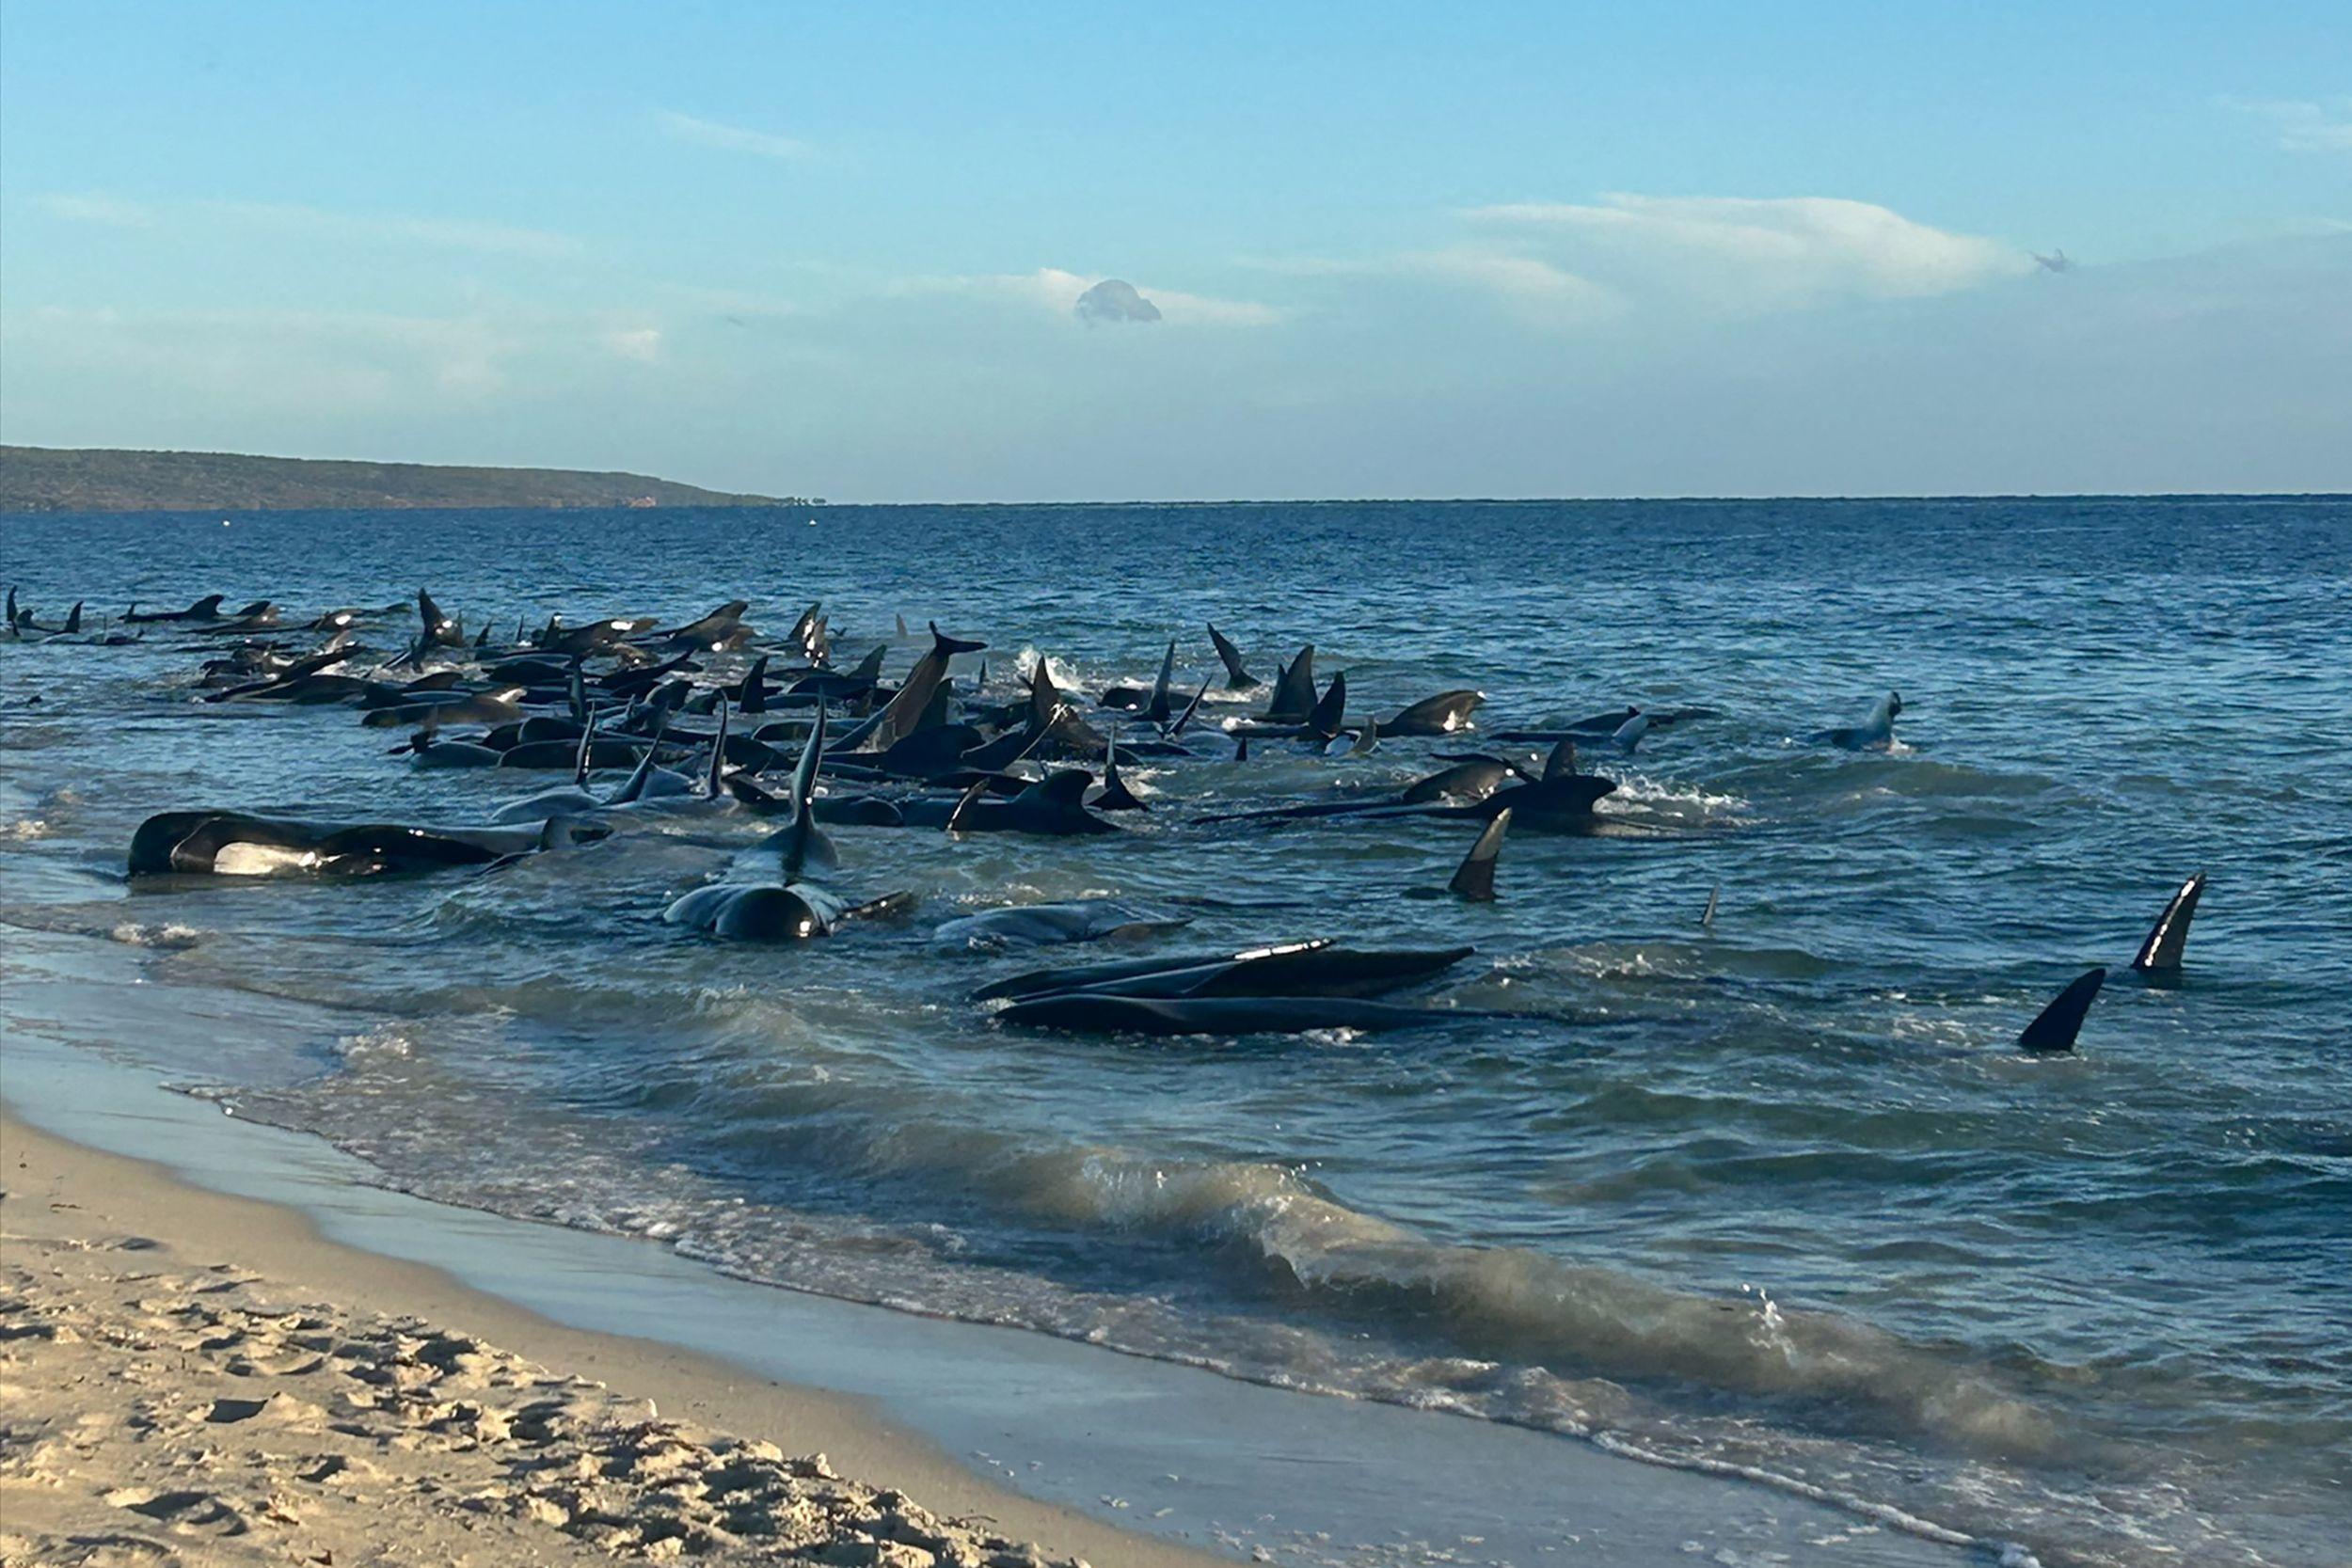 Les 160 dauphins se sont échoués sur une plage à l’extrémité sud-ouest de l’Australie. AFP Photo/Department of Biodiversity, Conservation and Attractions